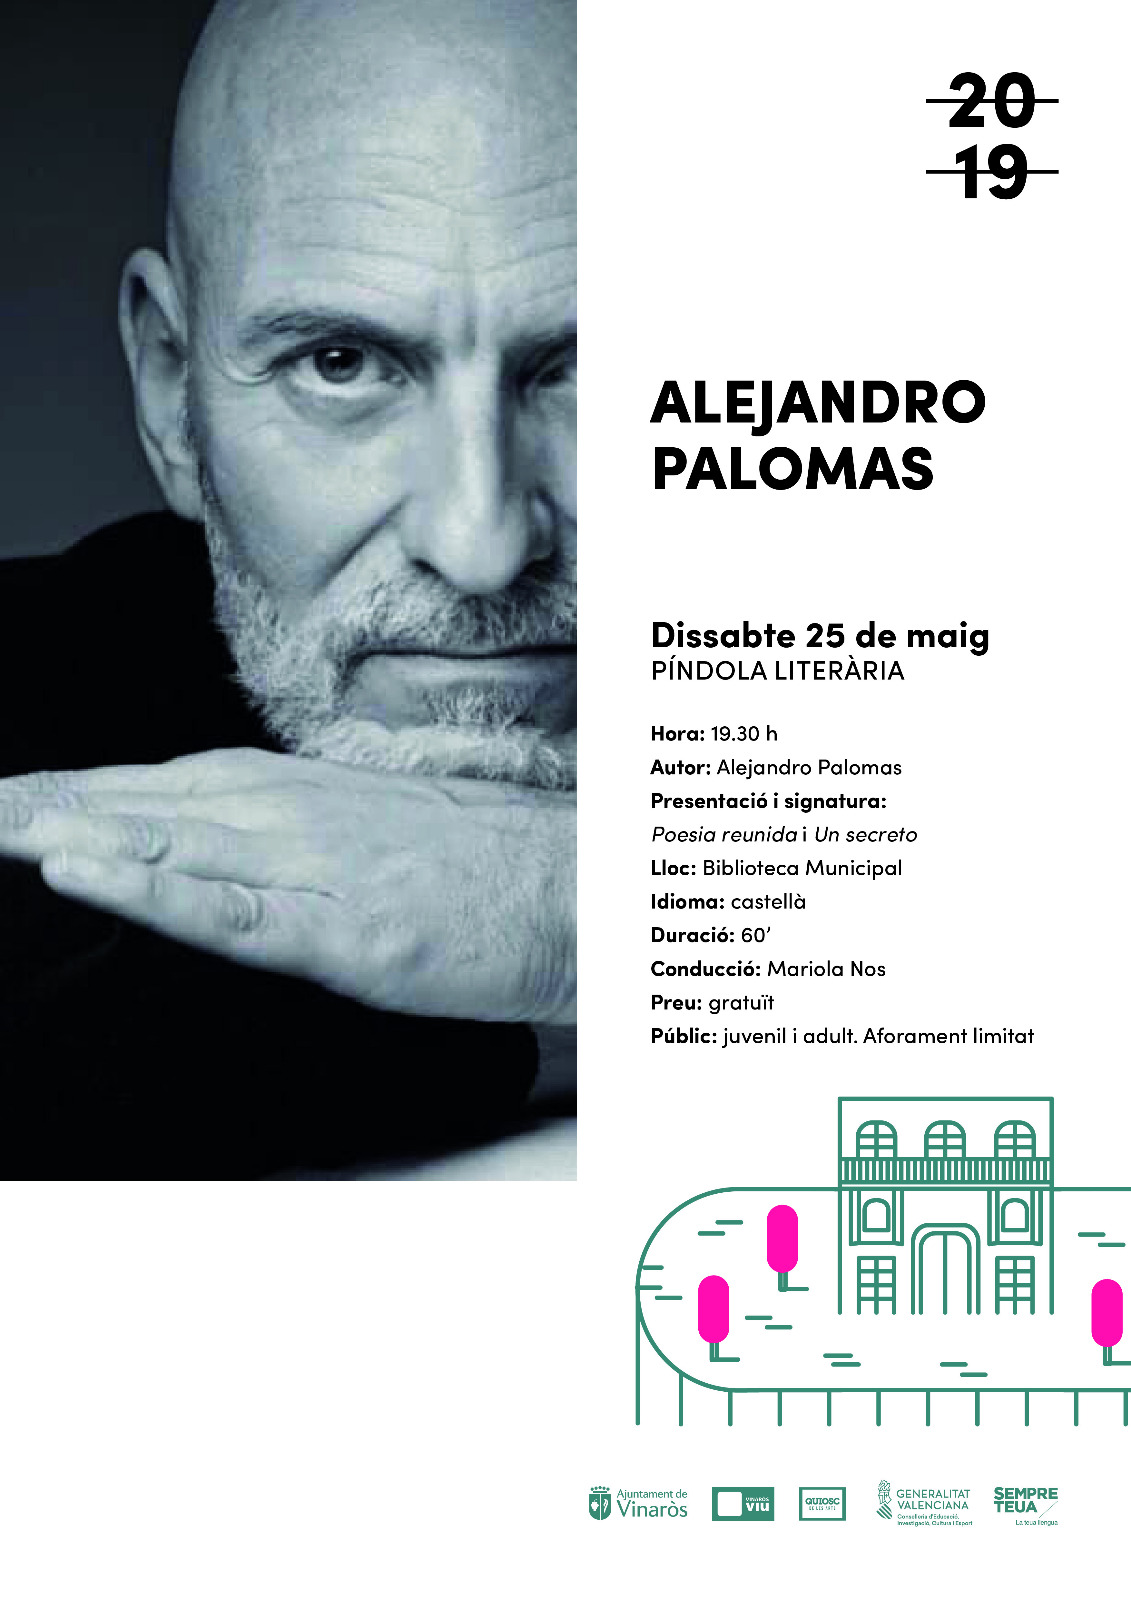 25 de maig a les 19:30, píndola literaria a càrrec d'Alejandro Palomas. Biblioteca Municipal. Entrada gratuïta. 